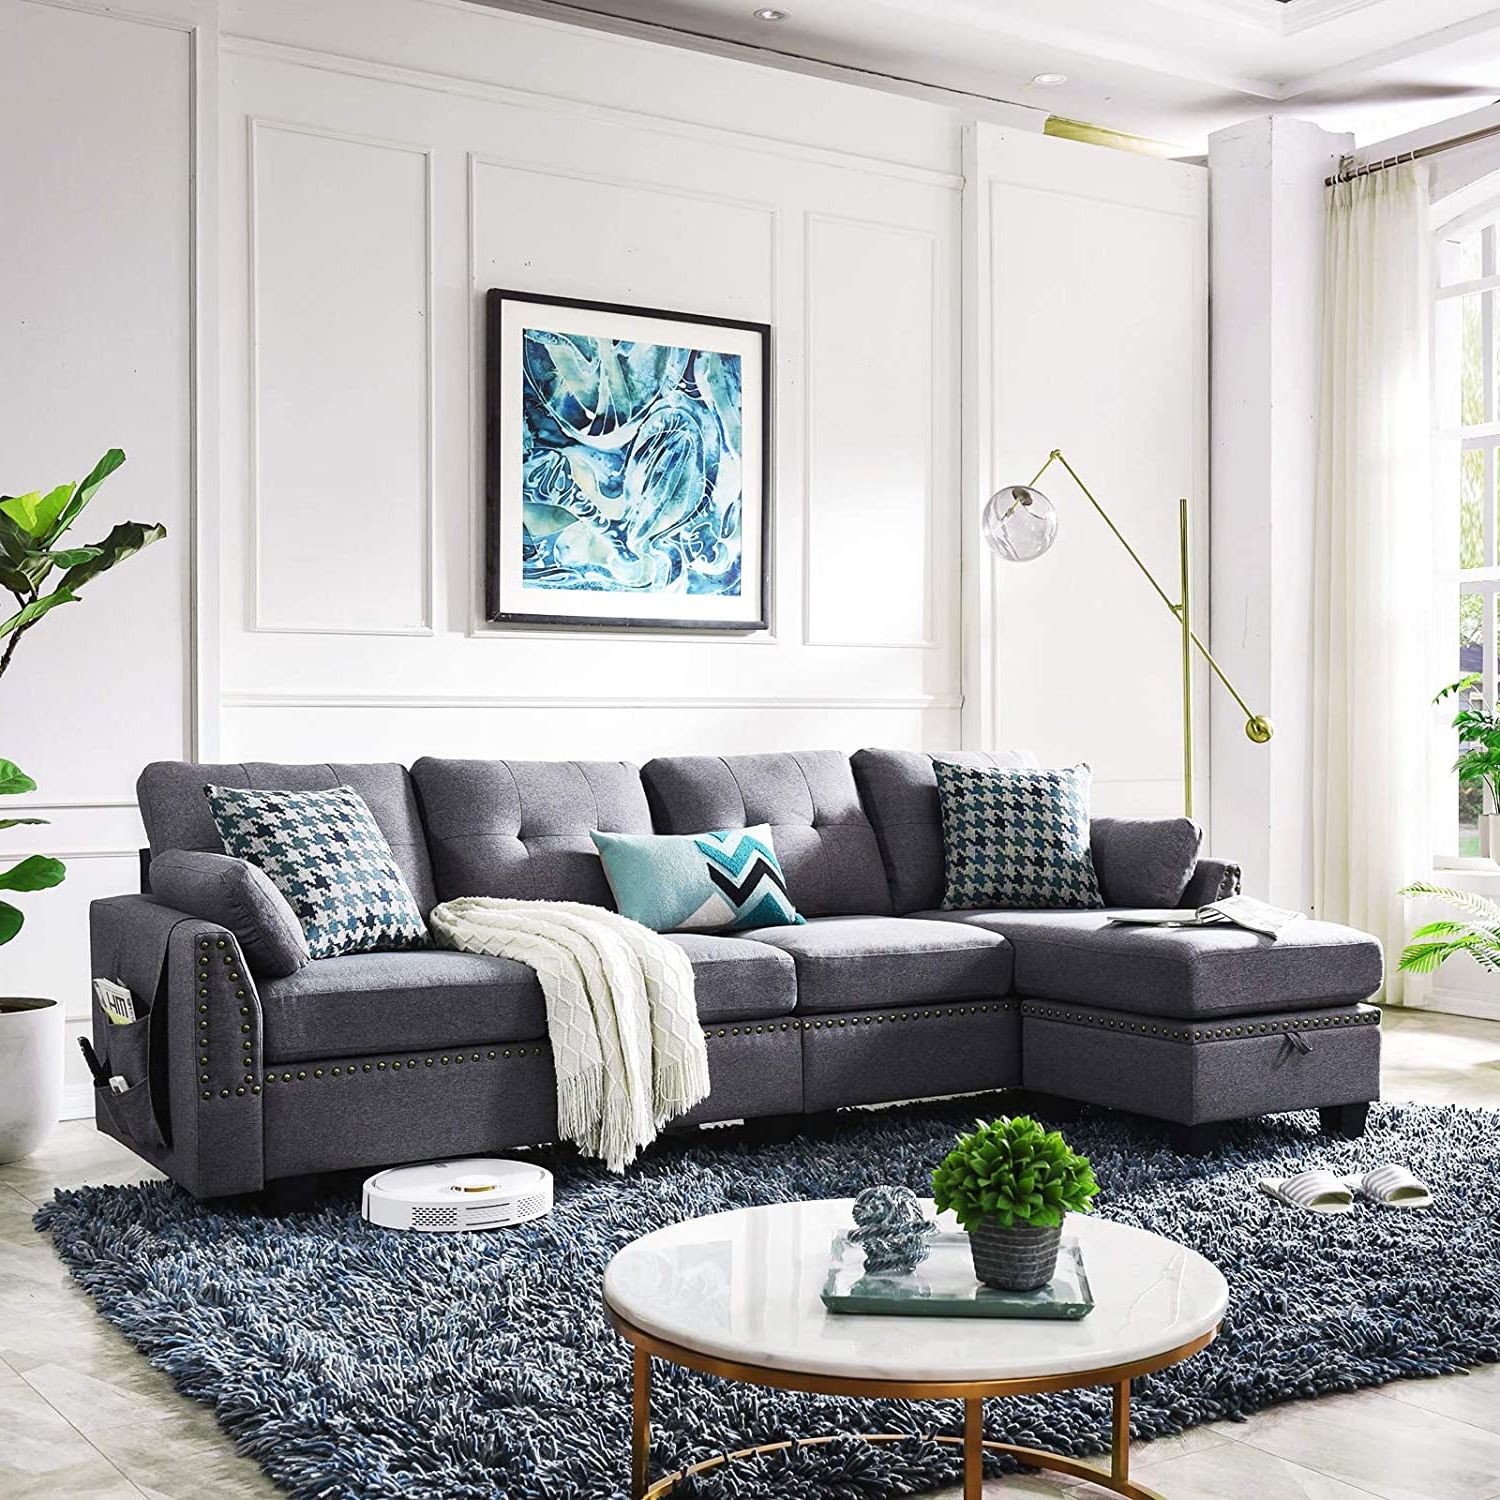 2018 Reversible Sectional Sofas Regarding Honbay Reversible Sectional Sofa For Living Room L Shape Couch 4 Seat (View 10 of 15)